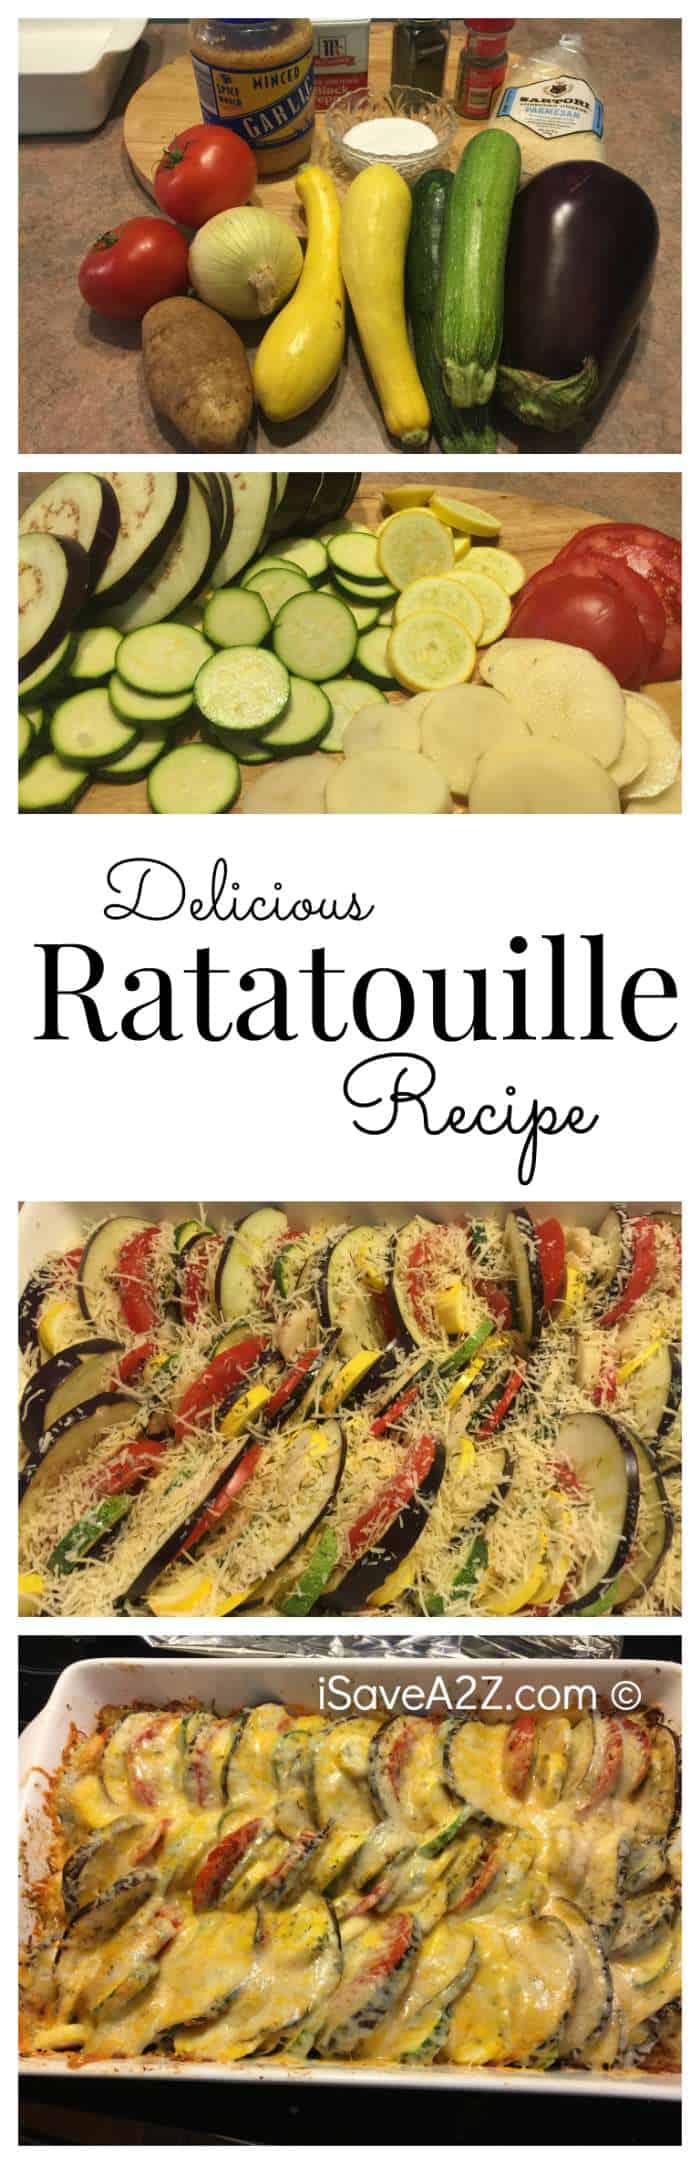 Delicious Ratatouille recipe